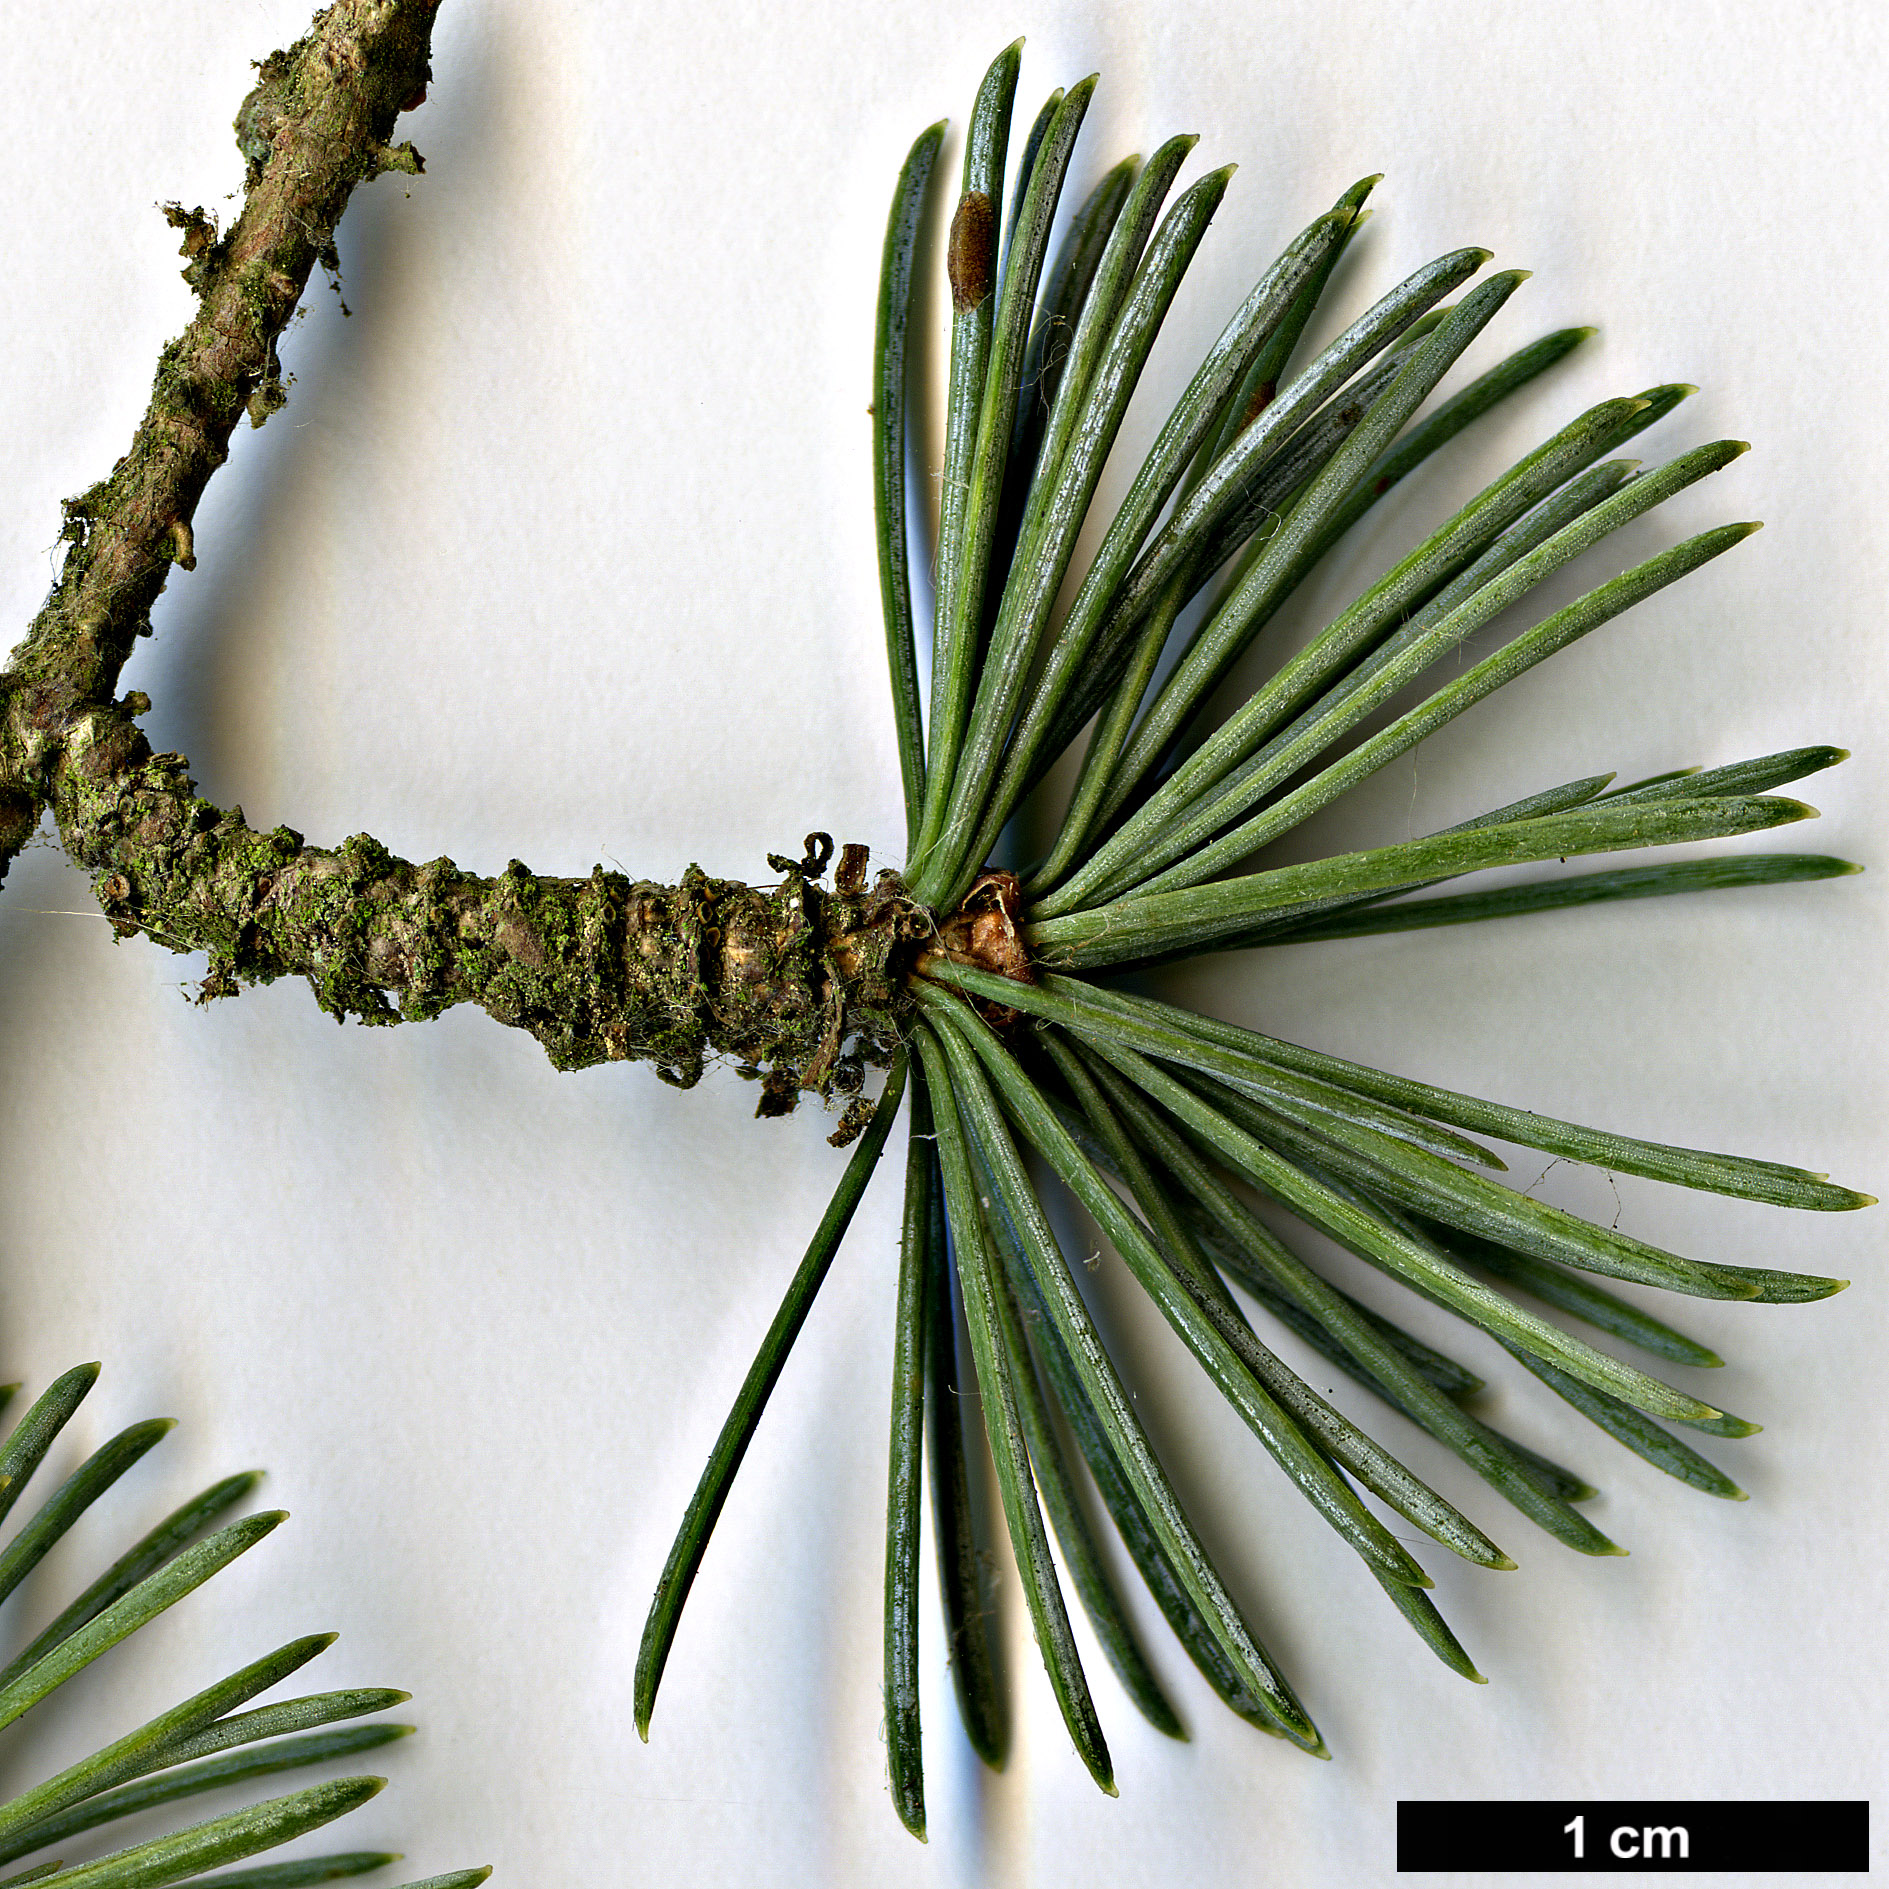 High resolution image: Family: Pinaceae - Genus: Cedrus - Taxon: atlantica